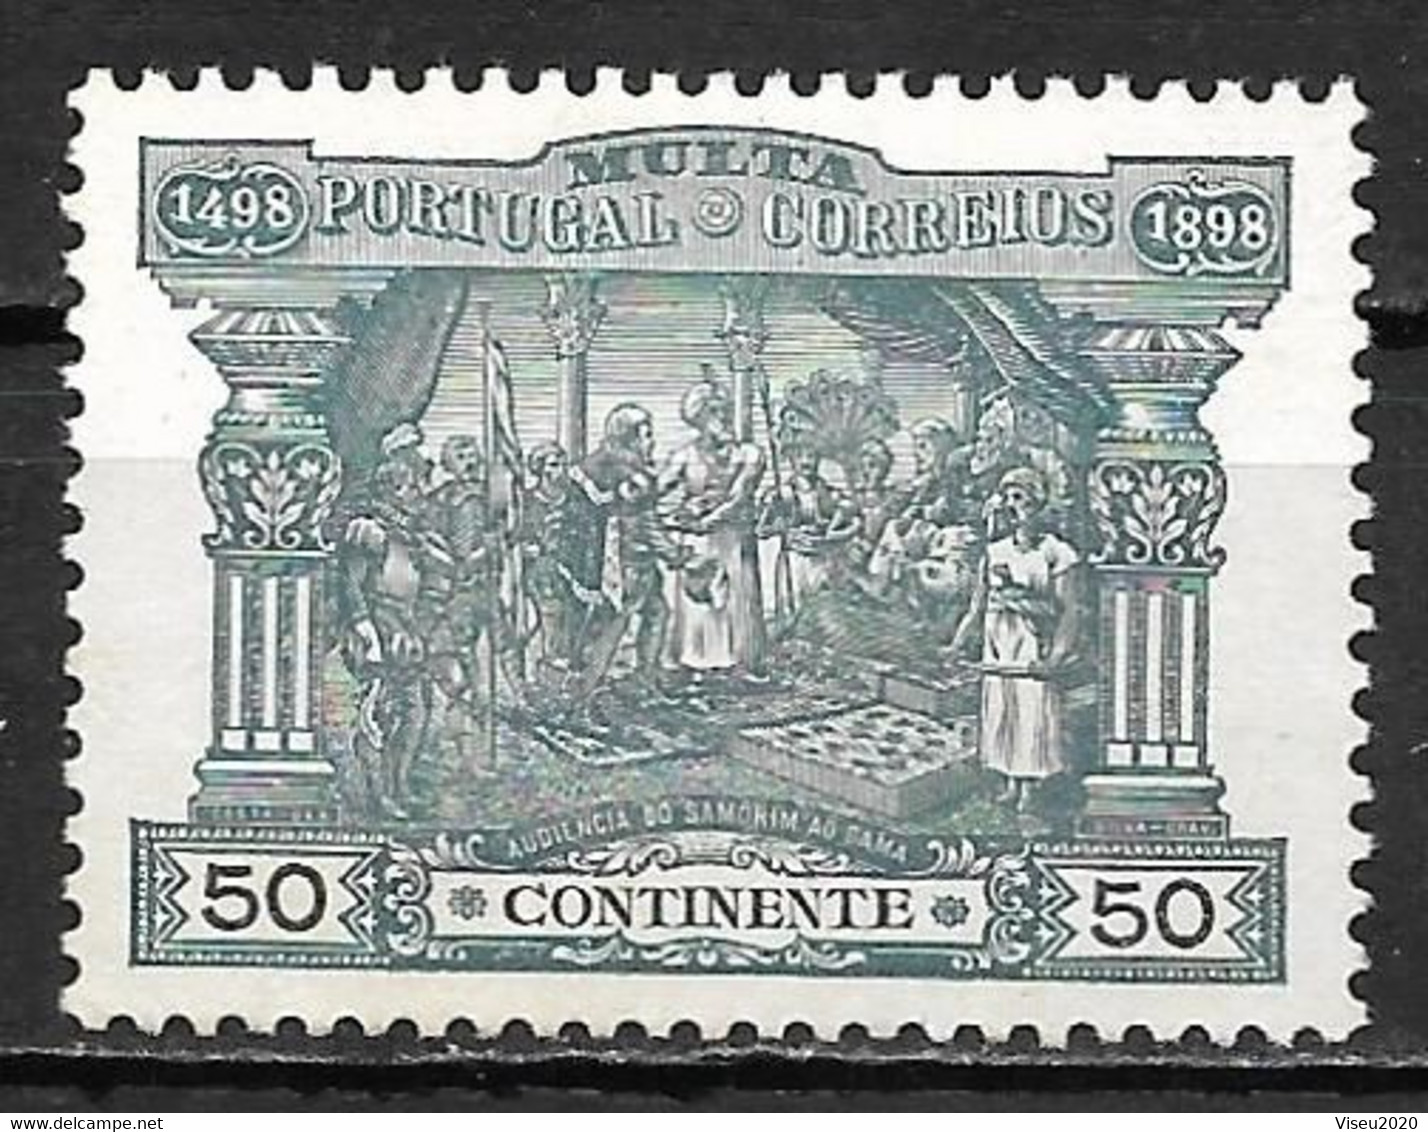 Portugal 1898 - PORTEADO - Centenário Do Caminho Marítimo Para A Índia - Afinsa 04 - Unused Stamps